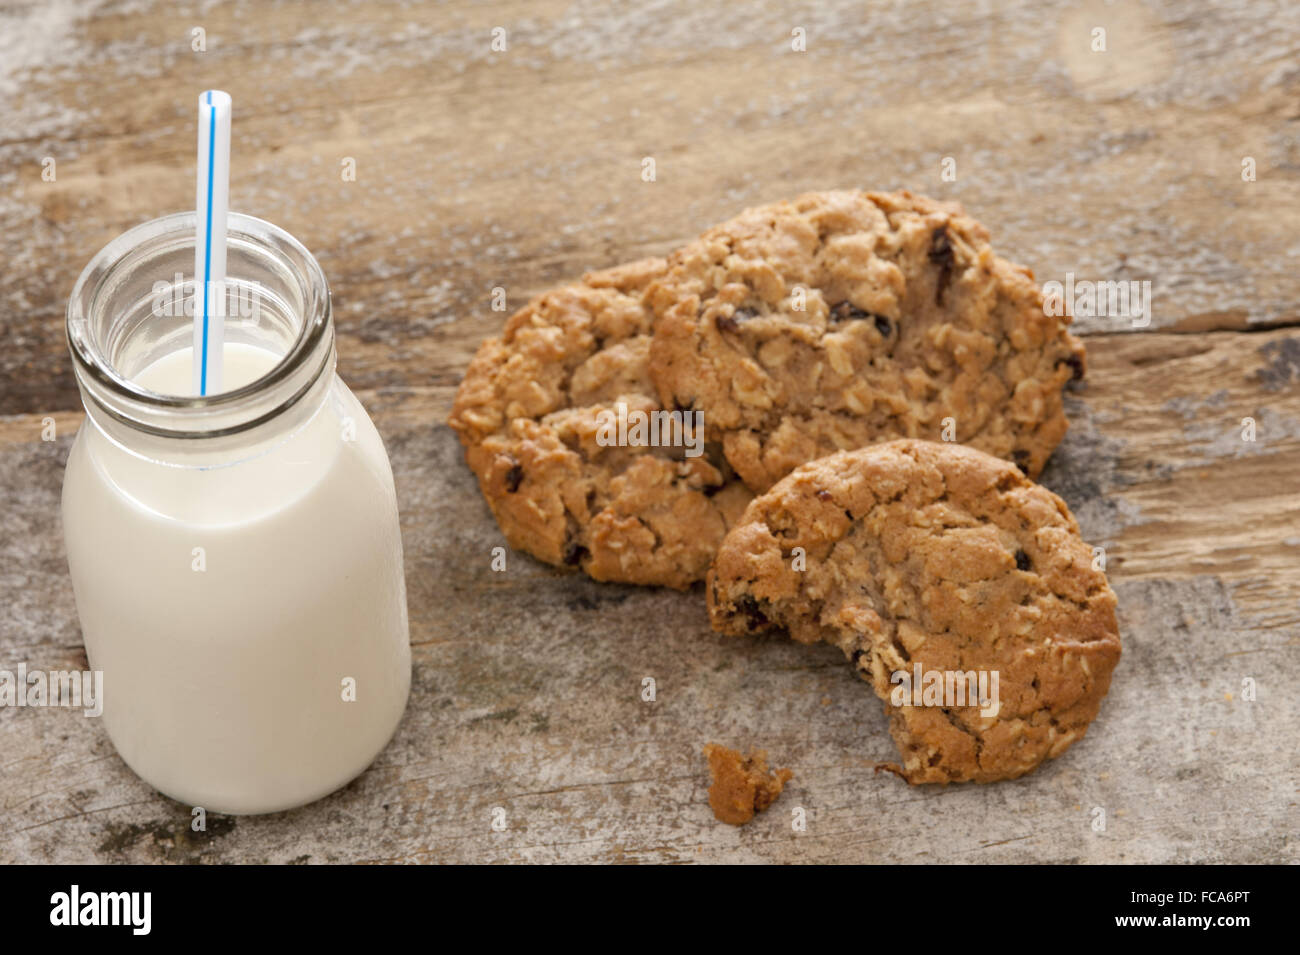 Bottle of milk with half eaten cookies Stock Photo